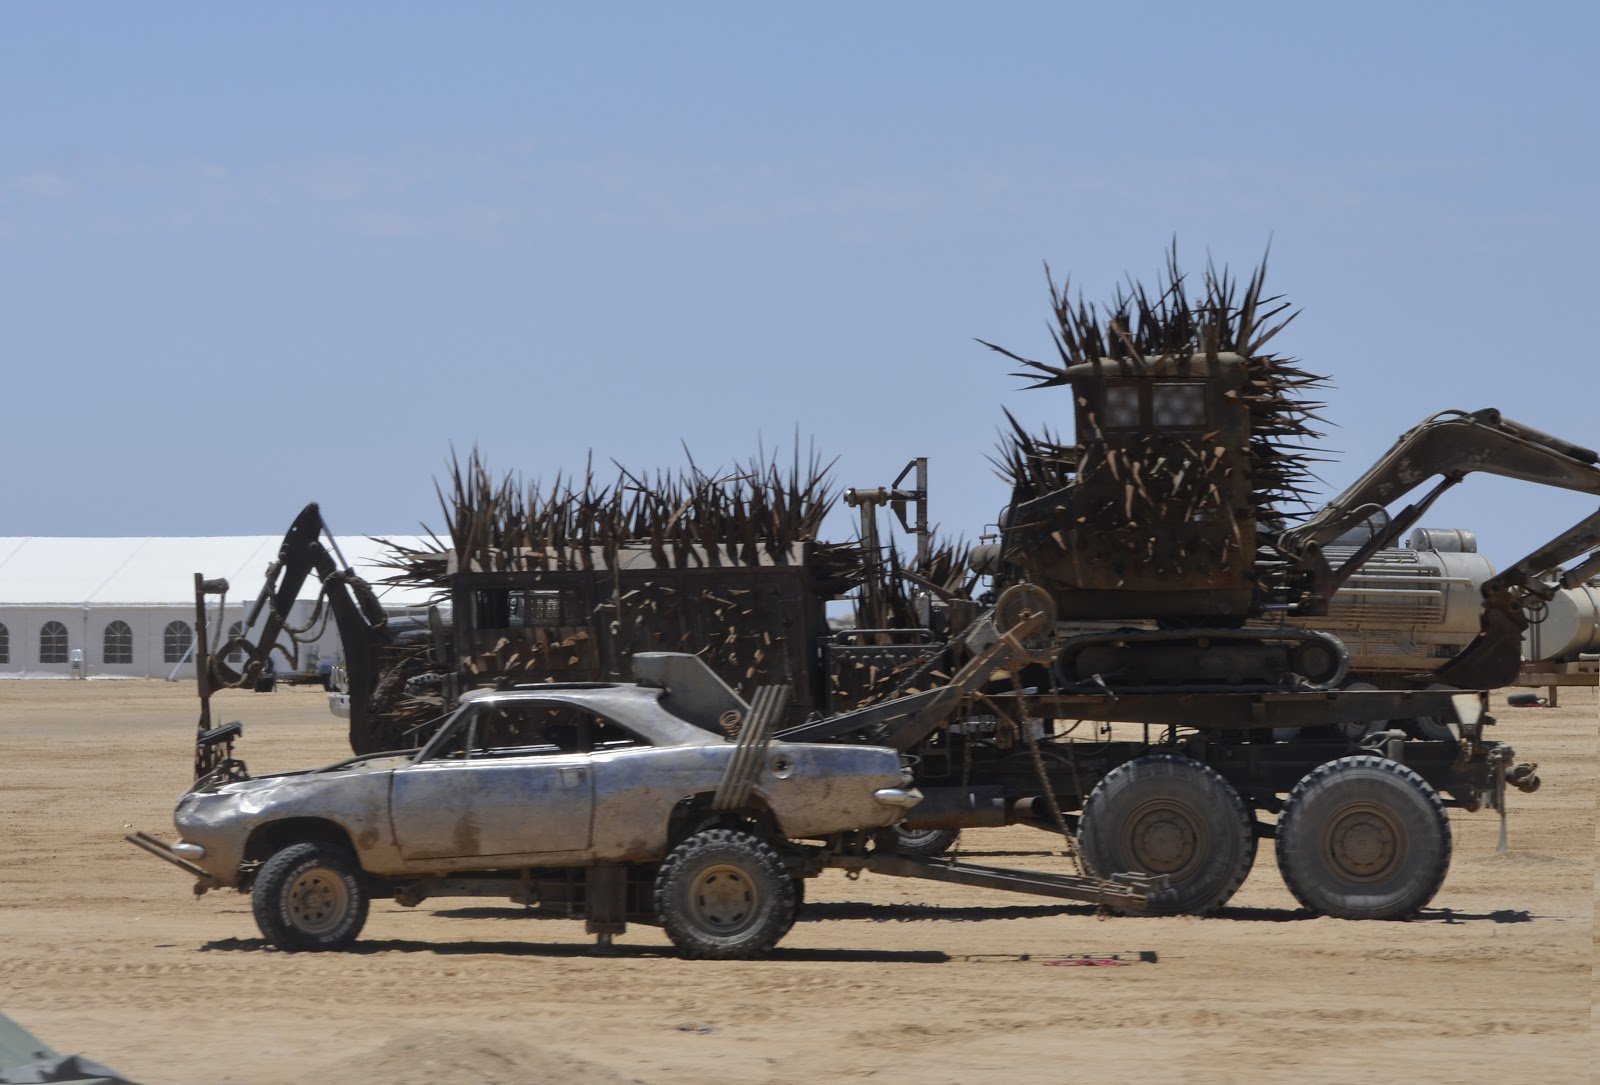 Descarga gratuita de fondo de pantalla para móvil de Películas, Mad Max: Furia En La Carretera.